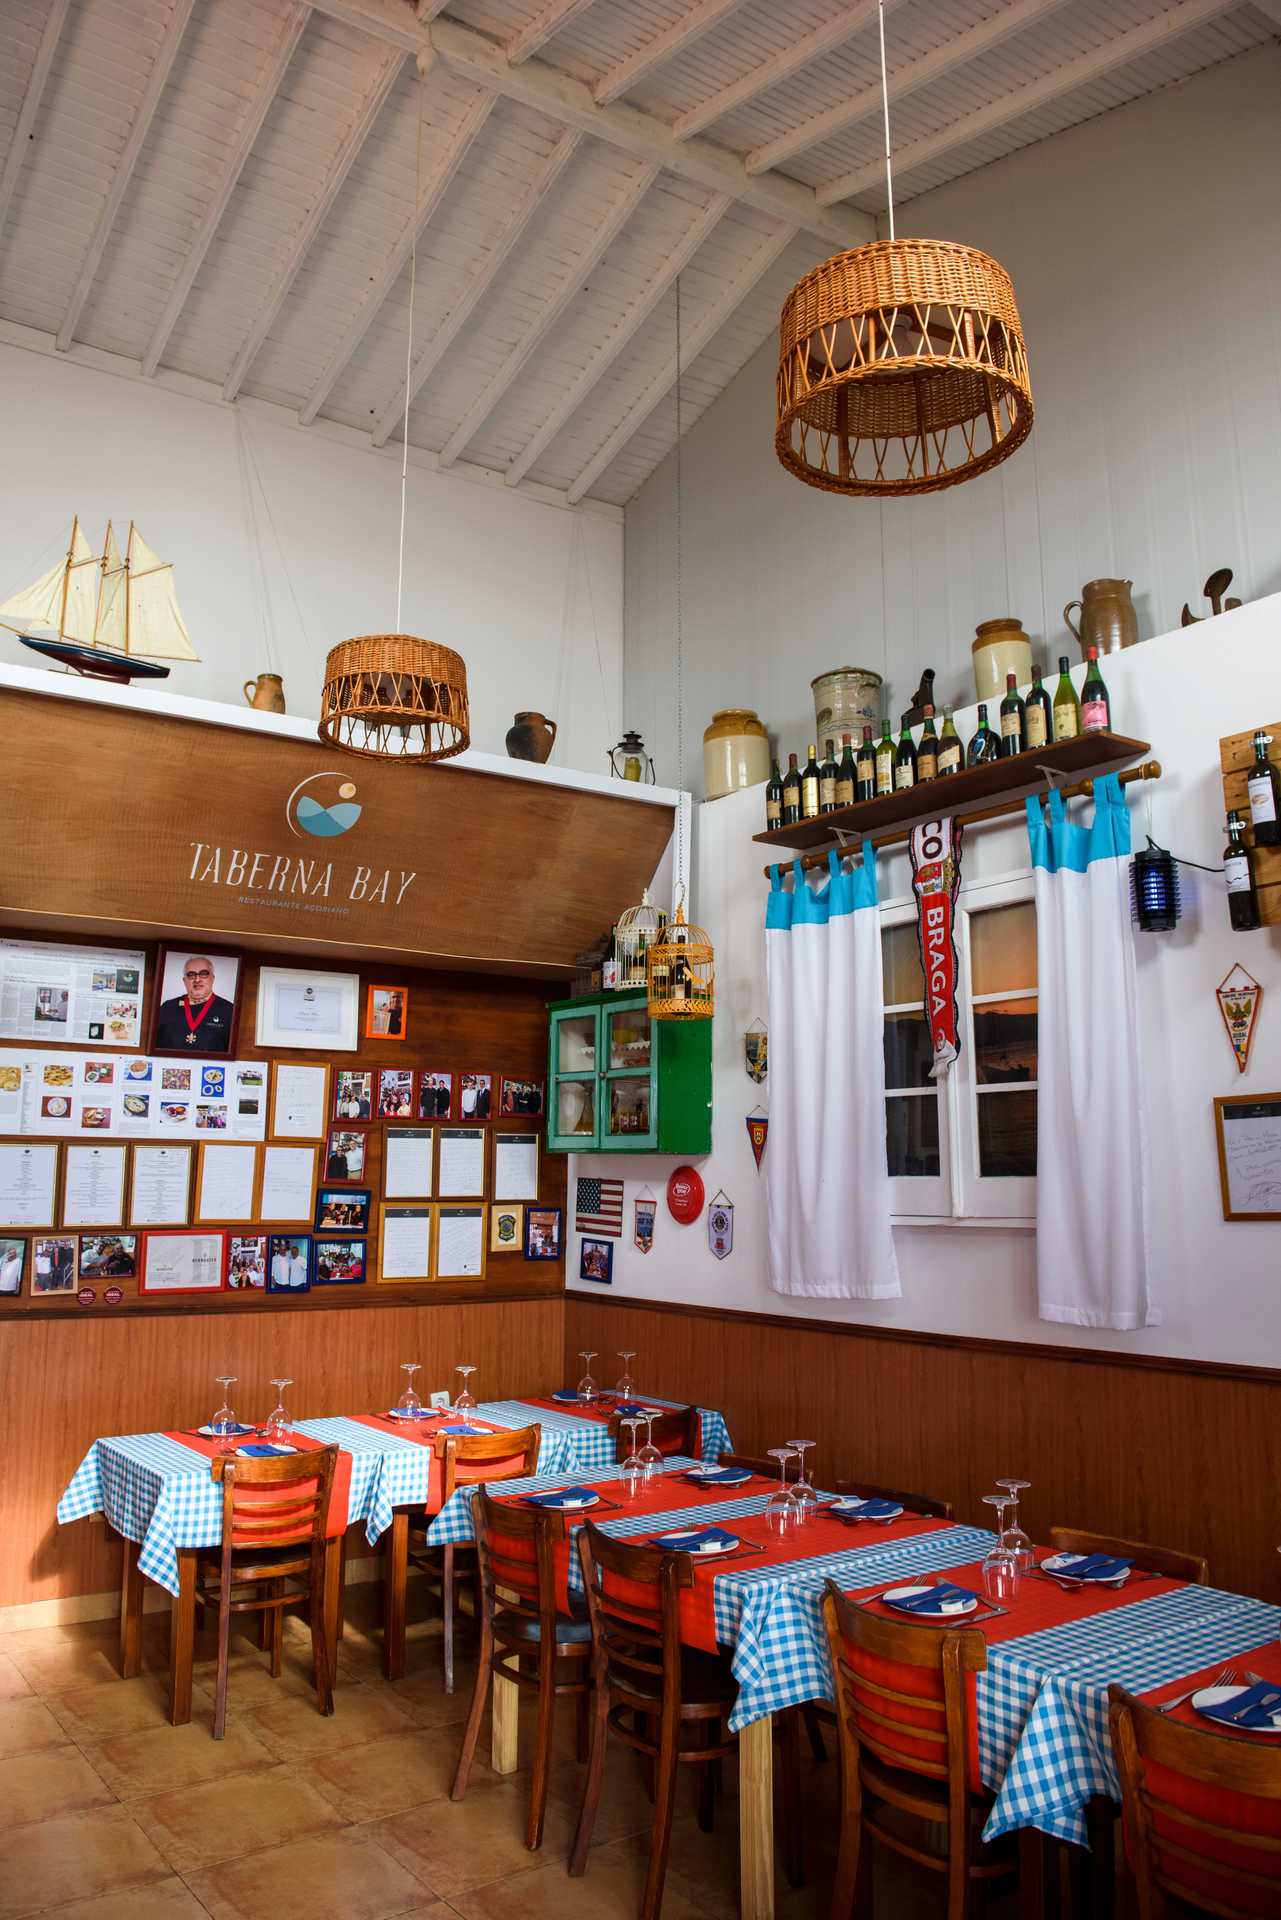 Roteiro Fim de-semana em São Miguel nos Açores – Restaurante Taberna Bay